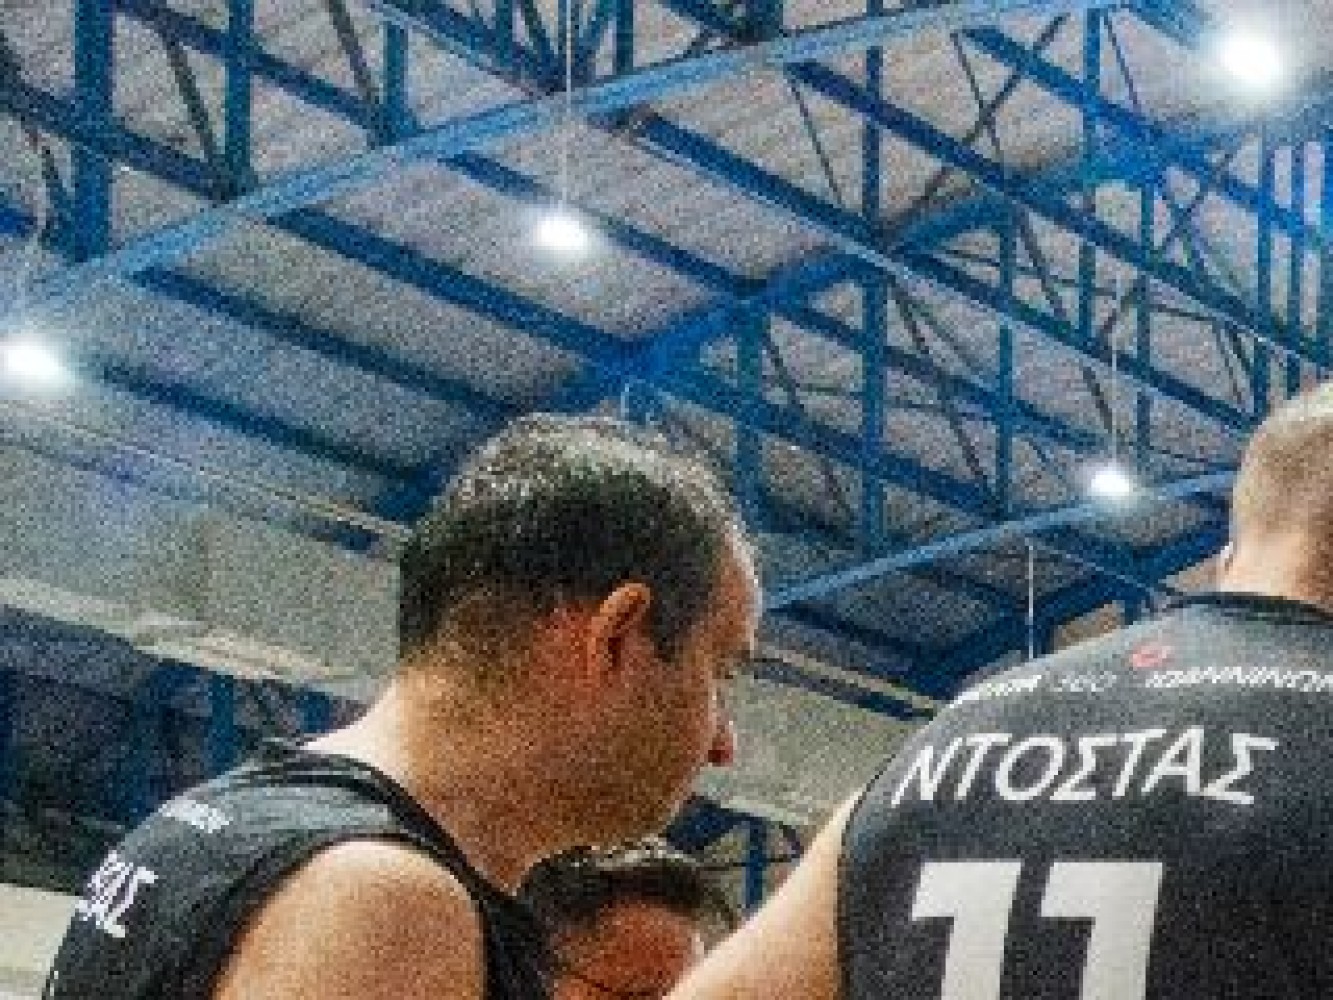 Πρωταθλήτρια η ομάδα μπάσκετ του ΙΕΚ ΔΕΛΤΑ 360 στο εργασιακό πρωτάθλημα Ν. Ιωαννίνων!